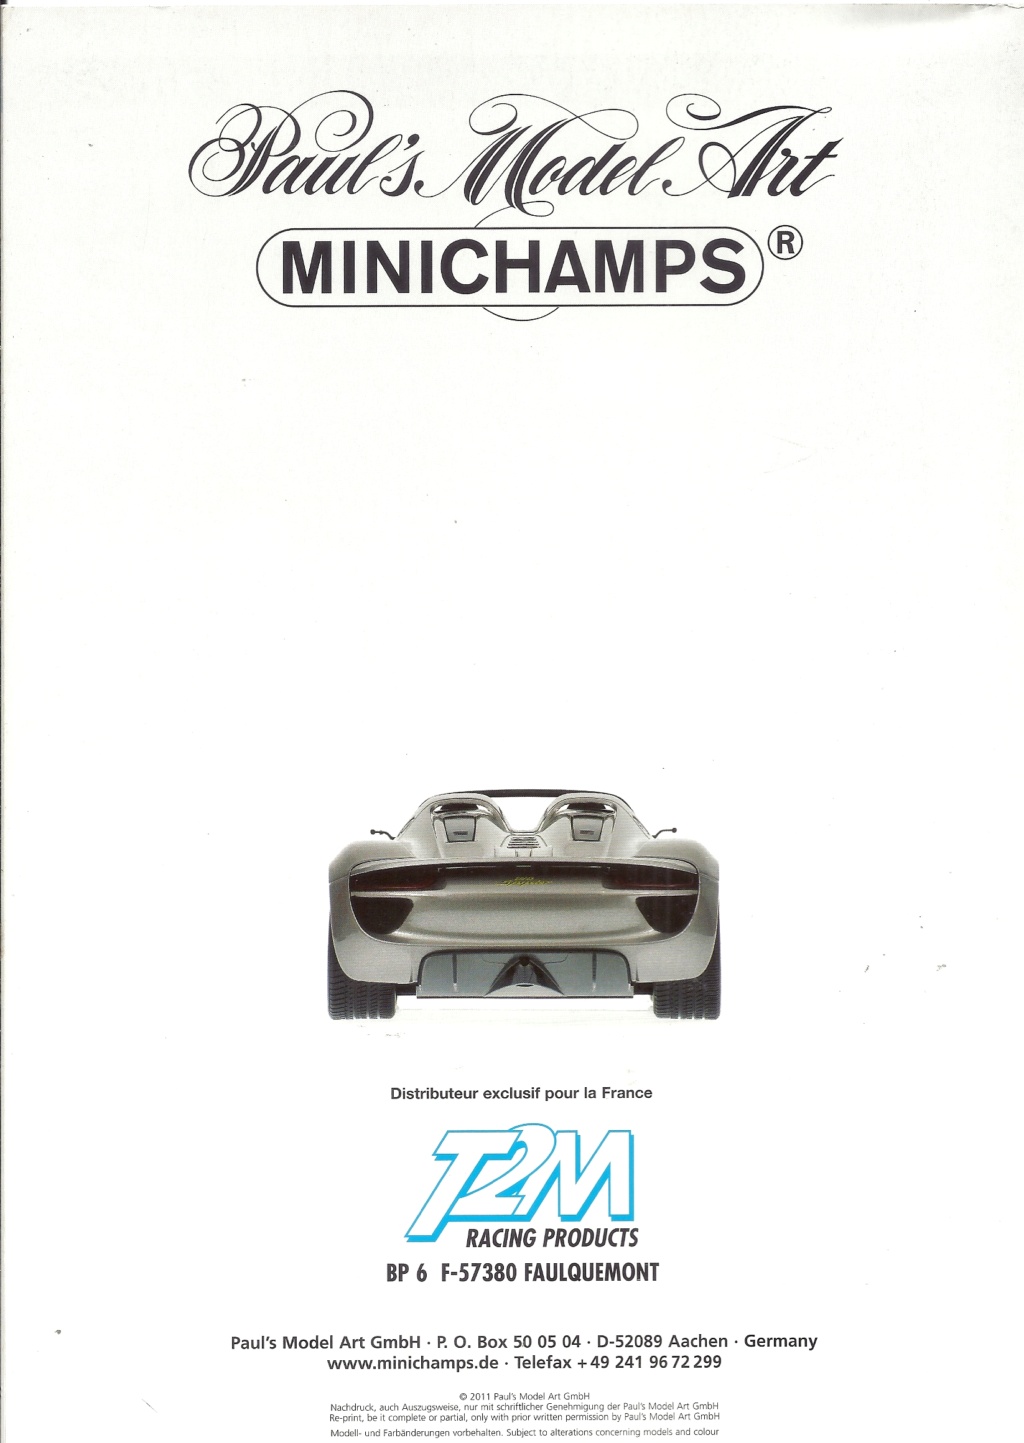 [MINICHAMPS 2011] Catalogue n°2 et tarif revendeur 2011 Minic615